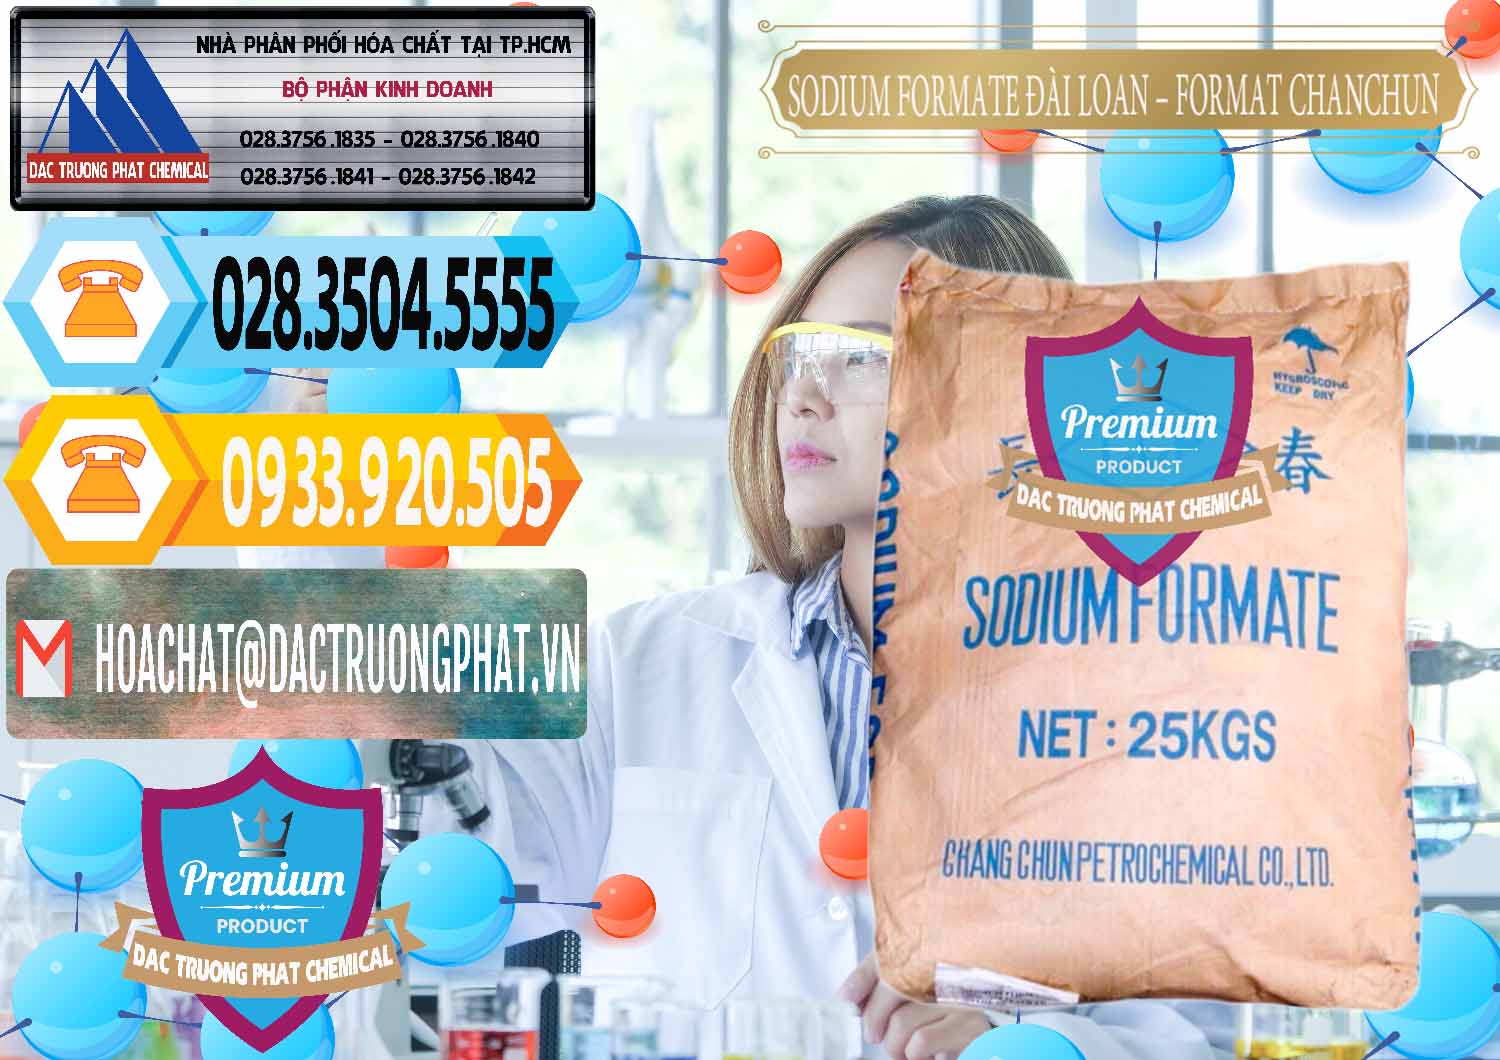 Nơi chuyên cung ứng & bán Sodium Formate - Natri Format Đài Loan Taiwan - 0141 - Công ty chuyên cung cấp & bán hóa chất tại TP.HCM - hoachattayrua.net